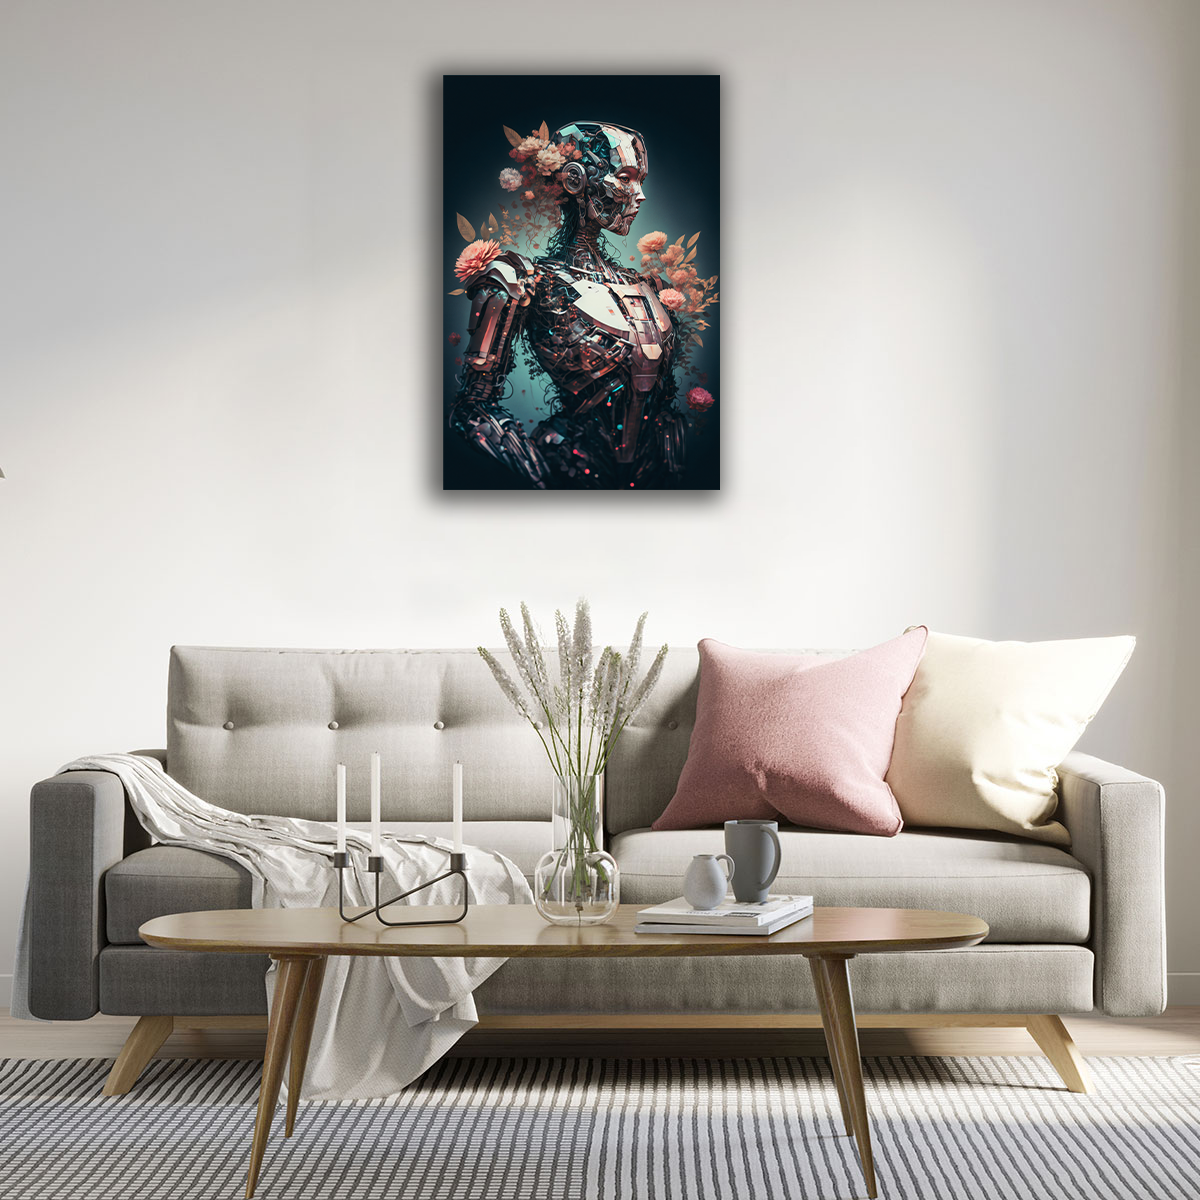 Robo-Flora Canvas Print - WallLumi Canvases